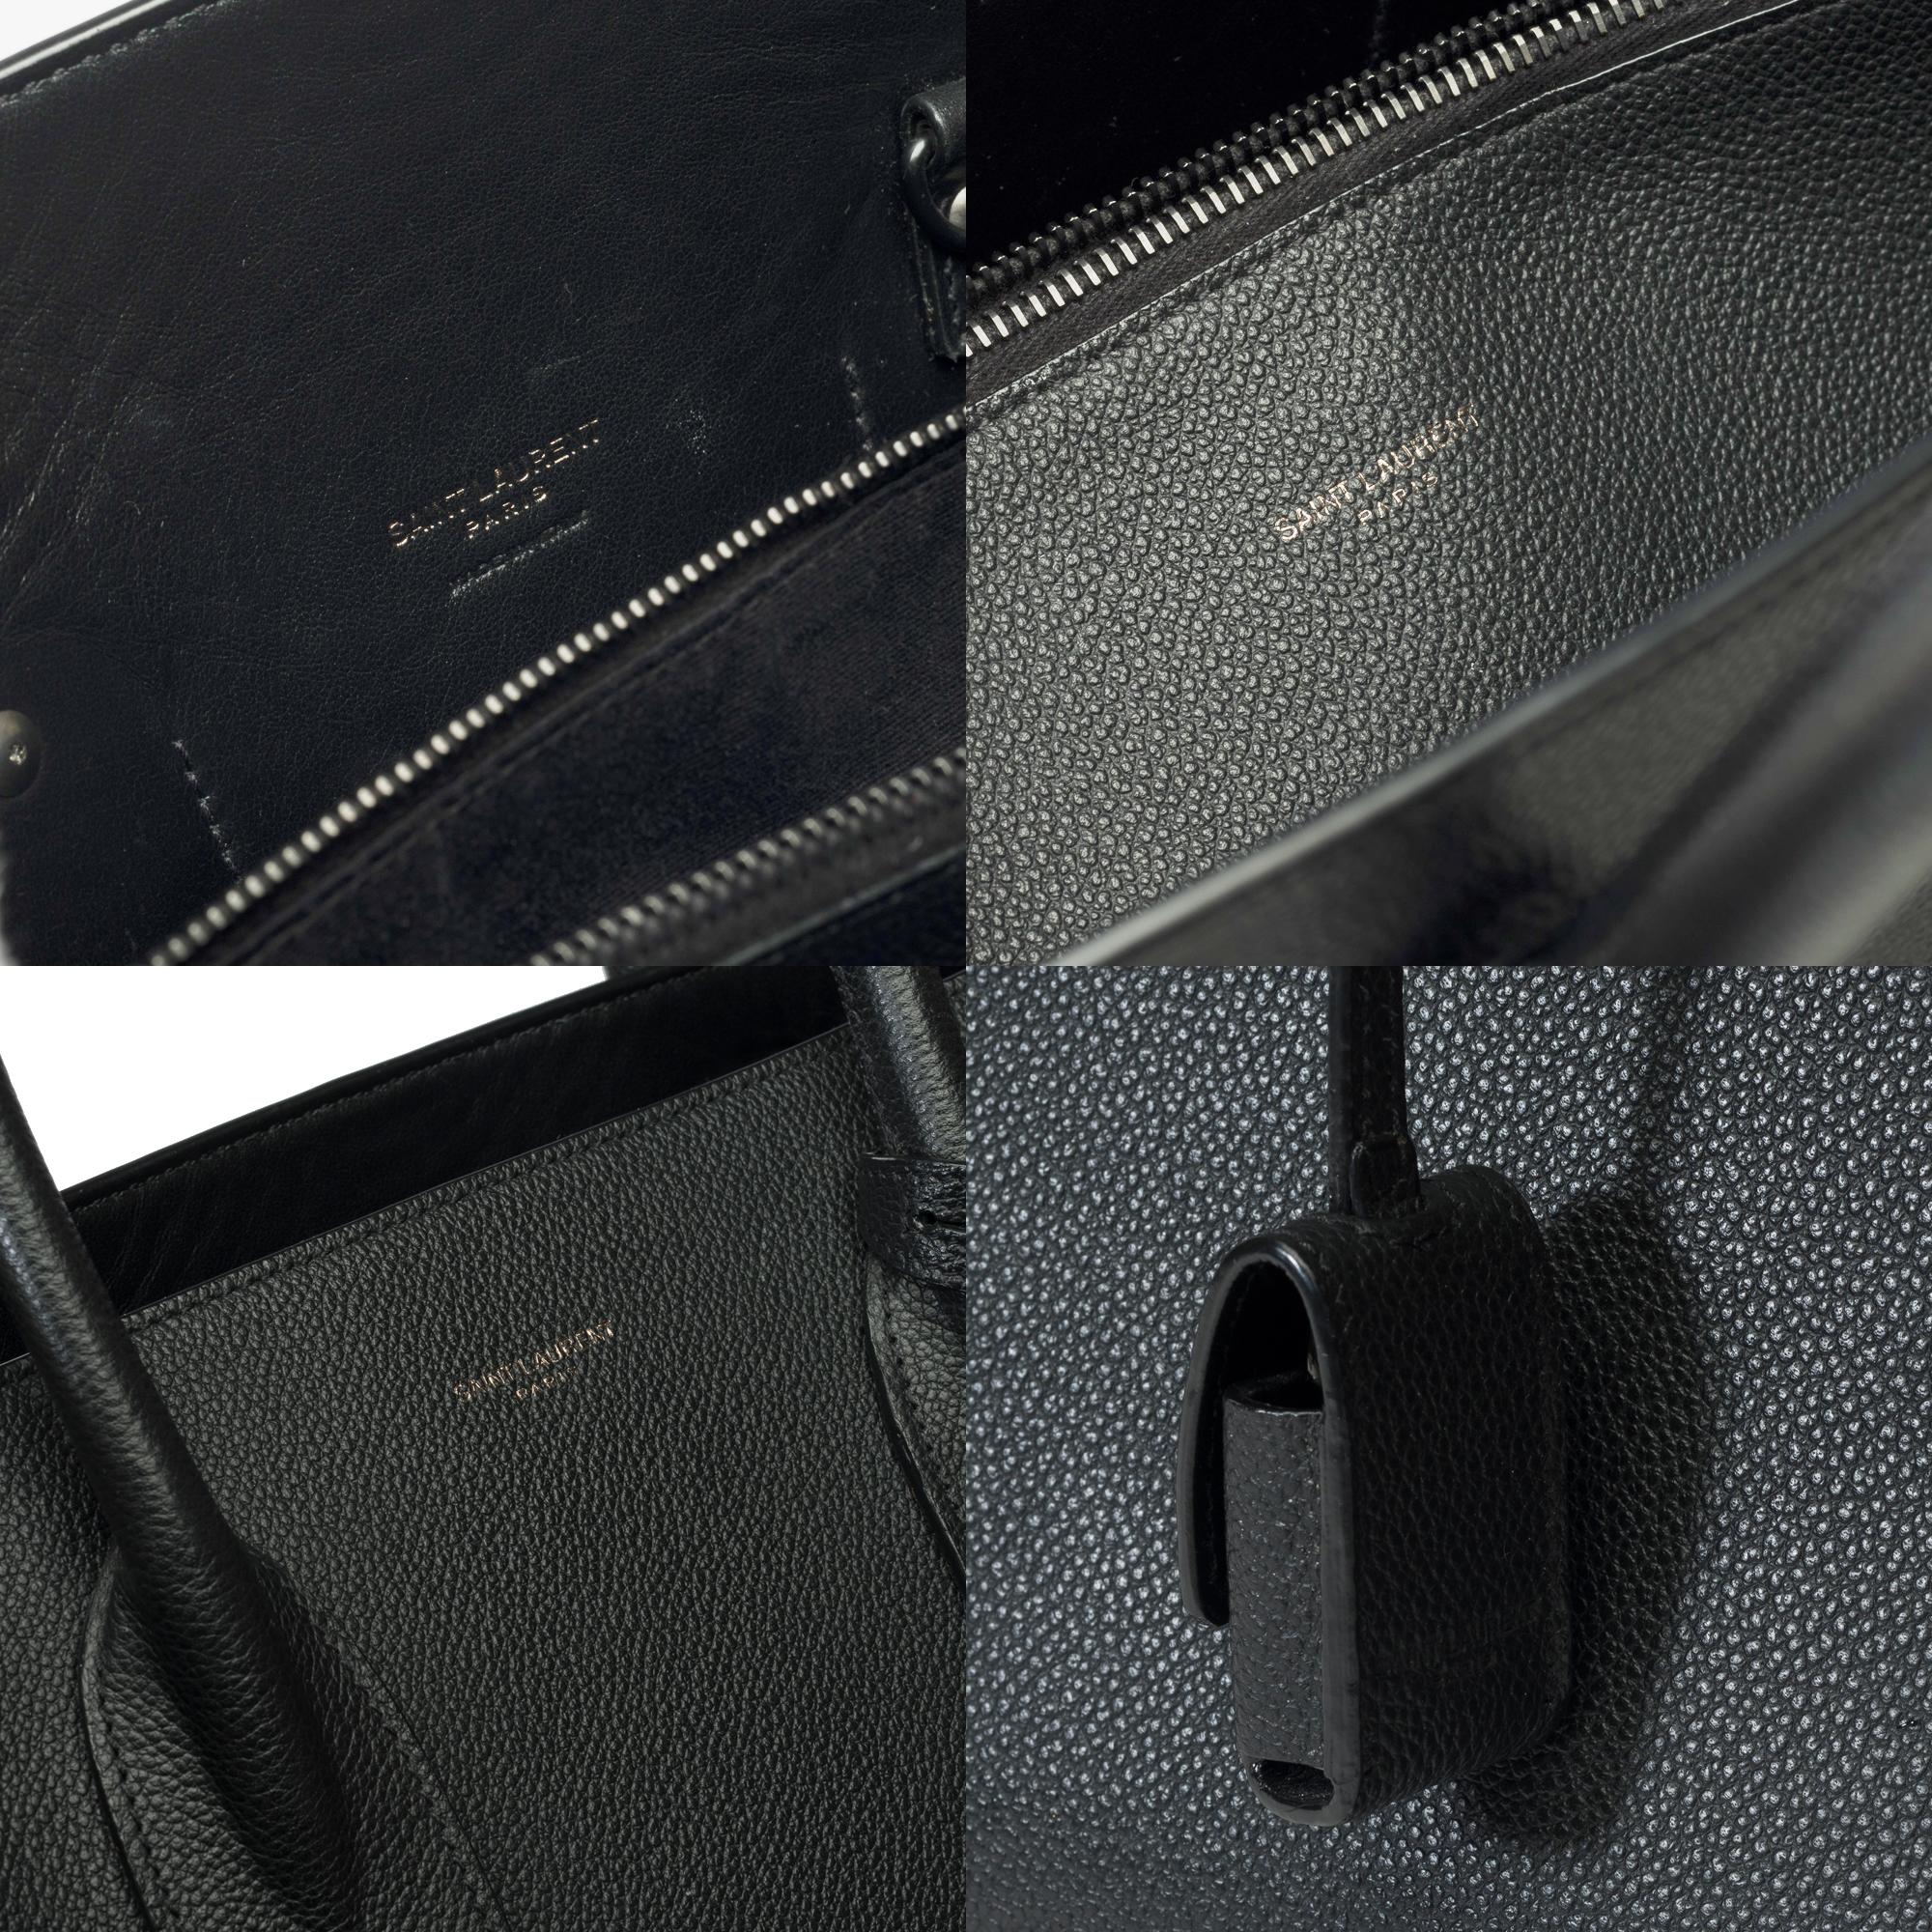 Saint Laurent Sac de Jour Large size handbag strap in black grained leather 2